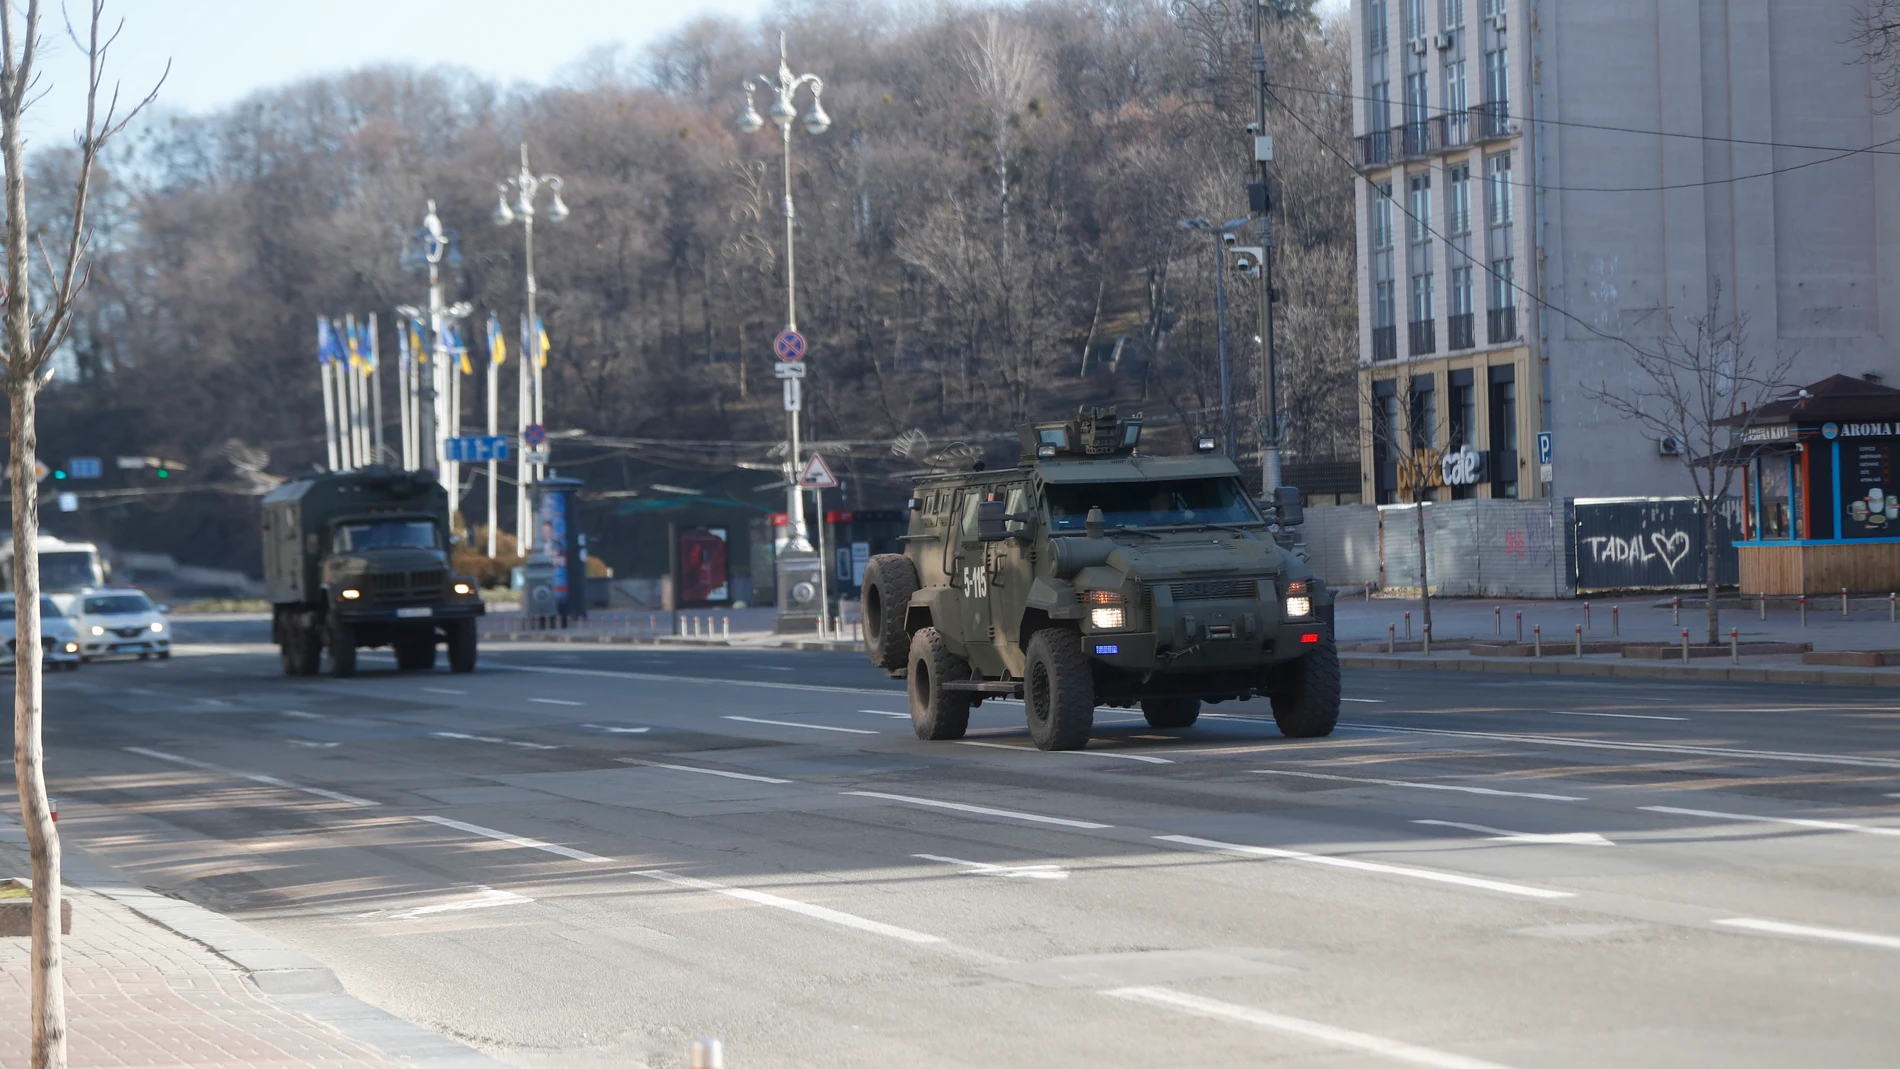 Vehículos blindados ucranianos transitan por una calle de Kiev, Ucrania